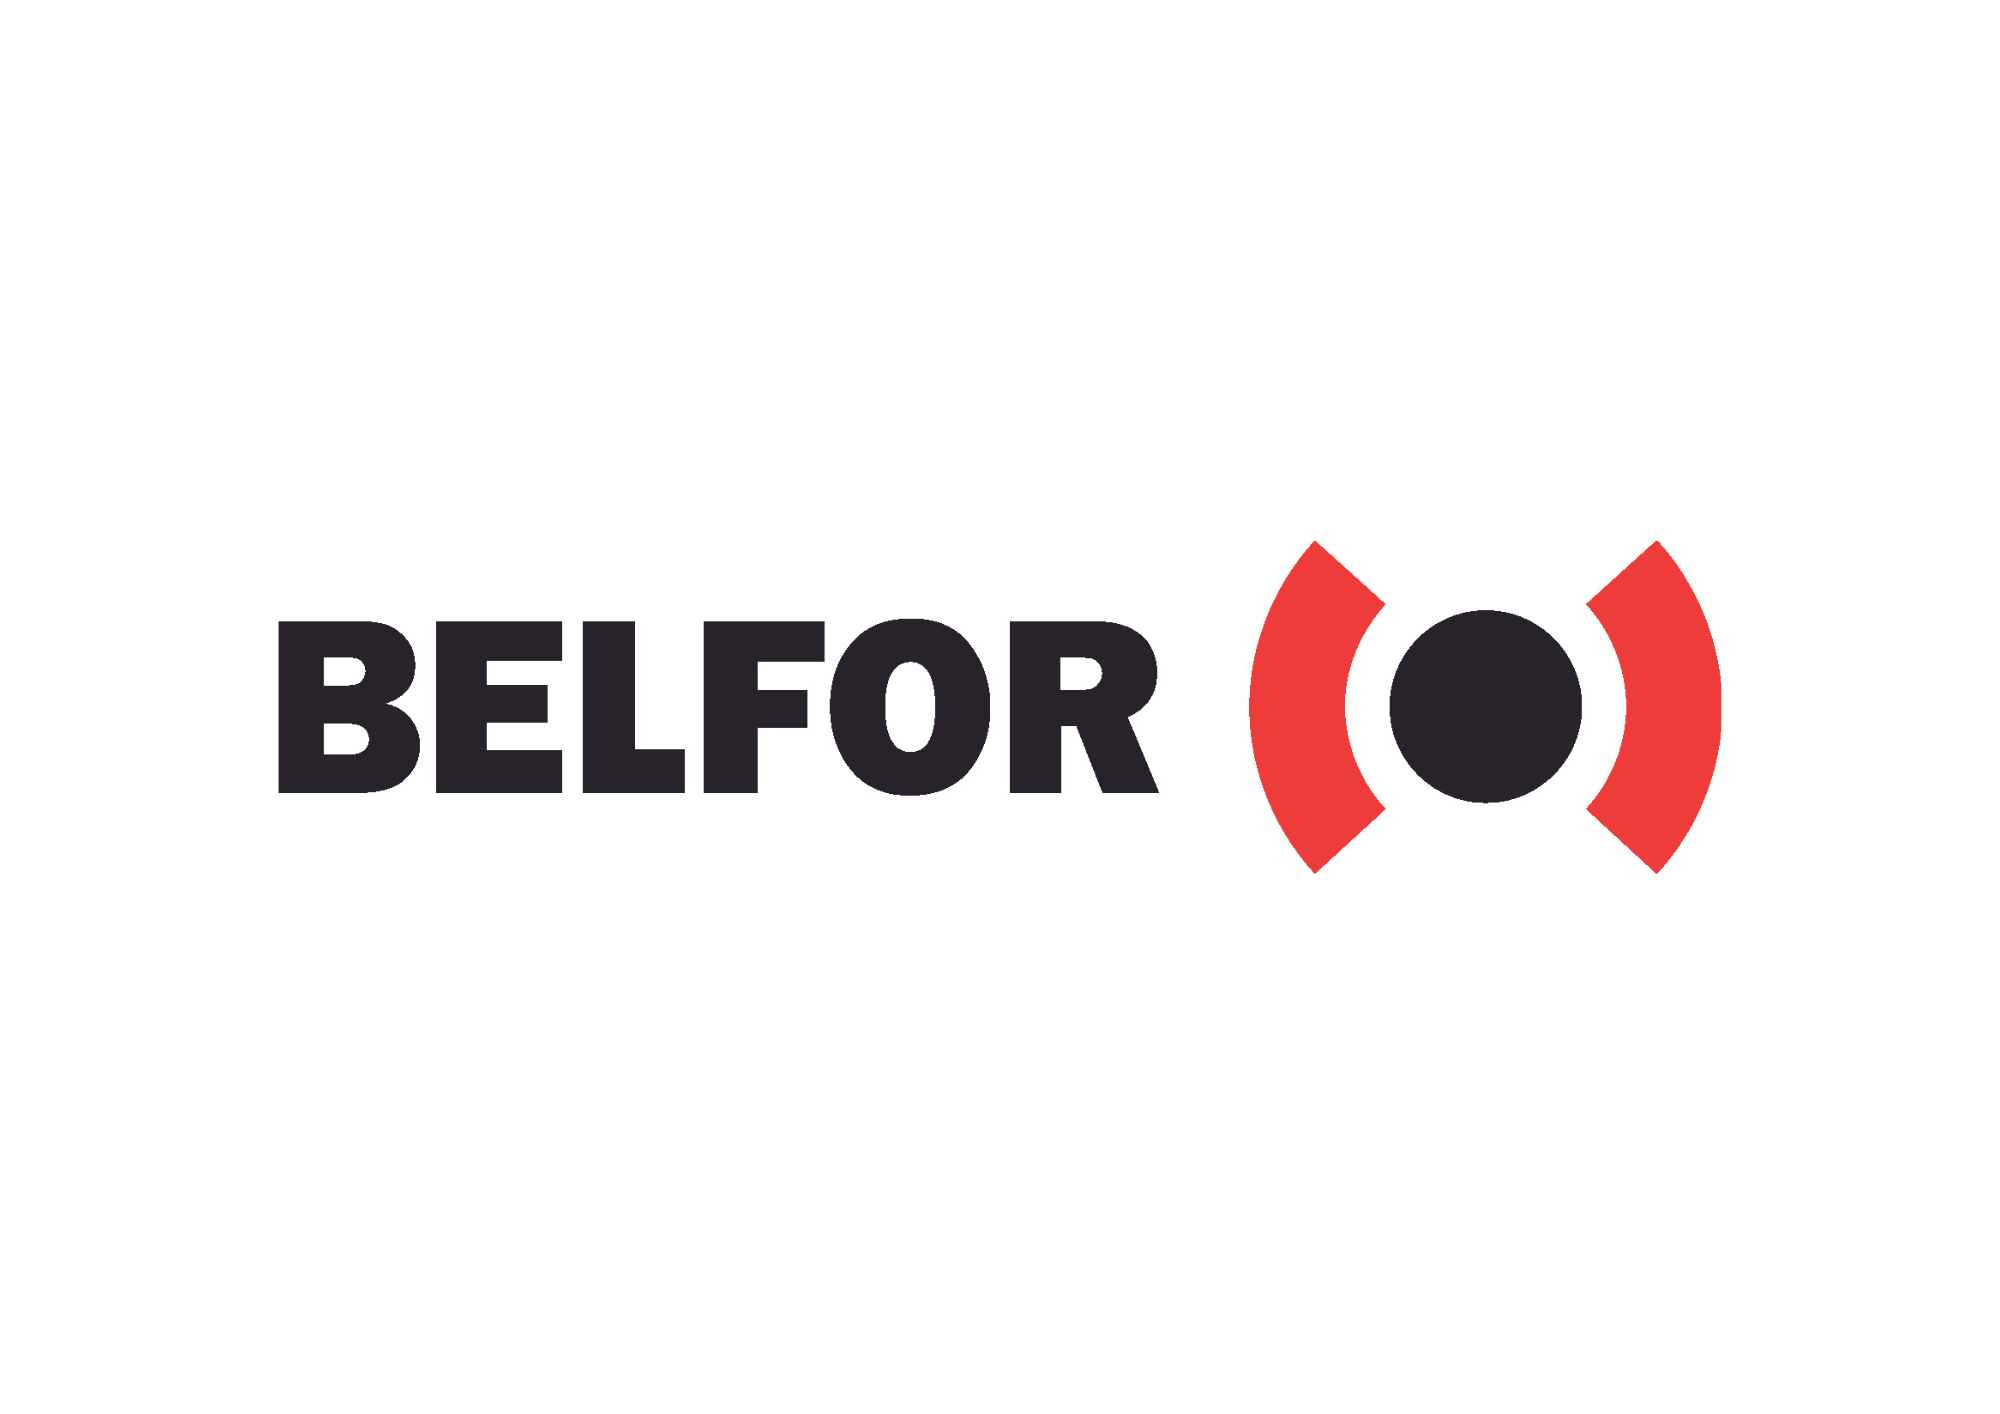 logo for Belfor UK Ltd